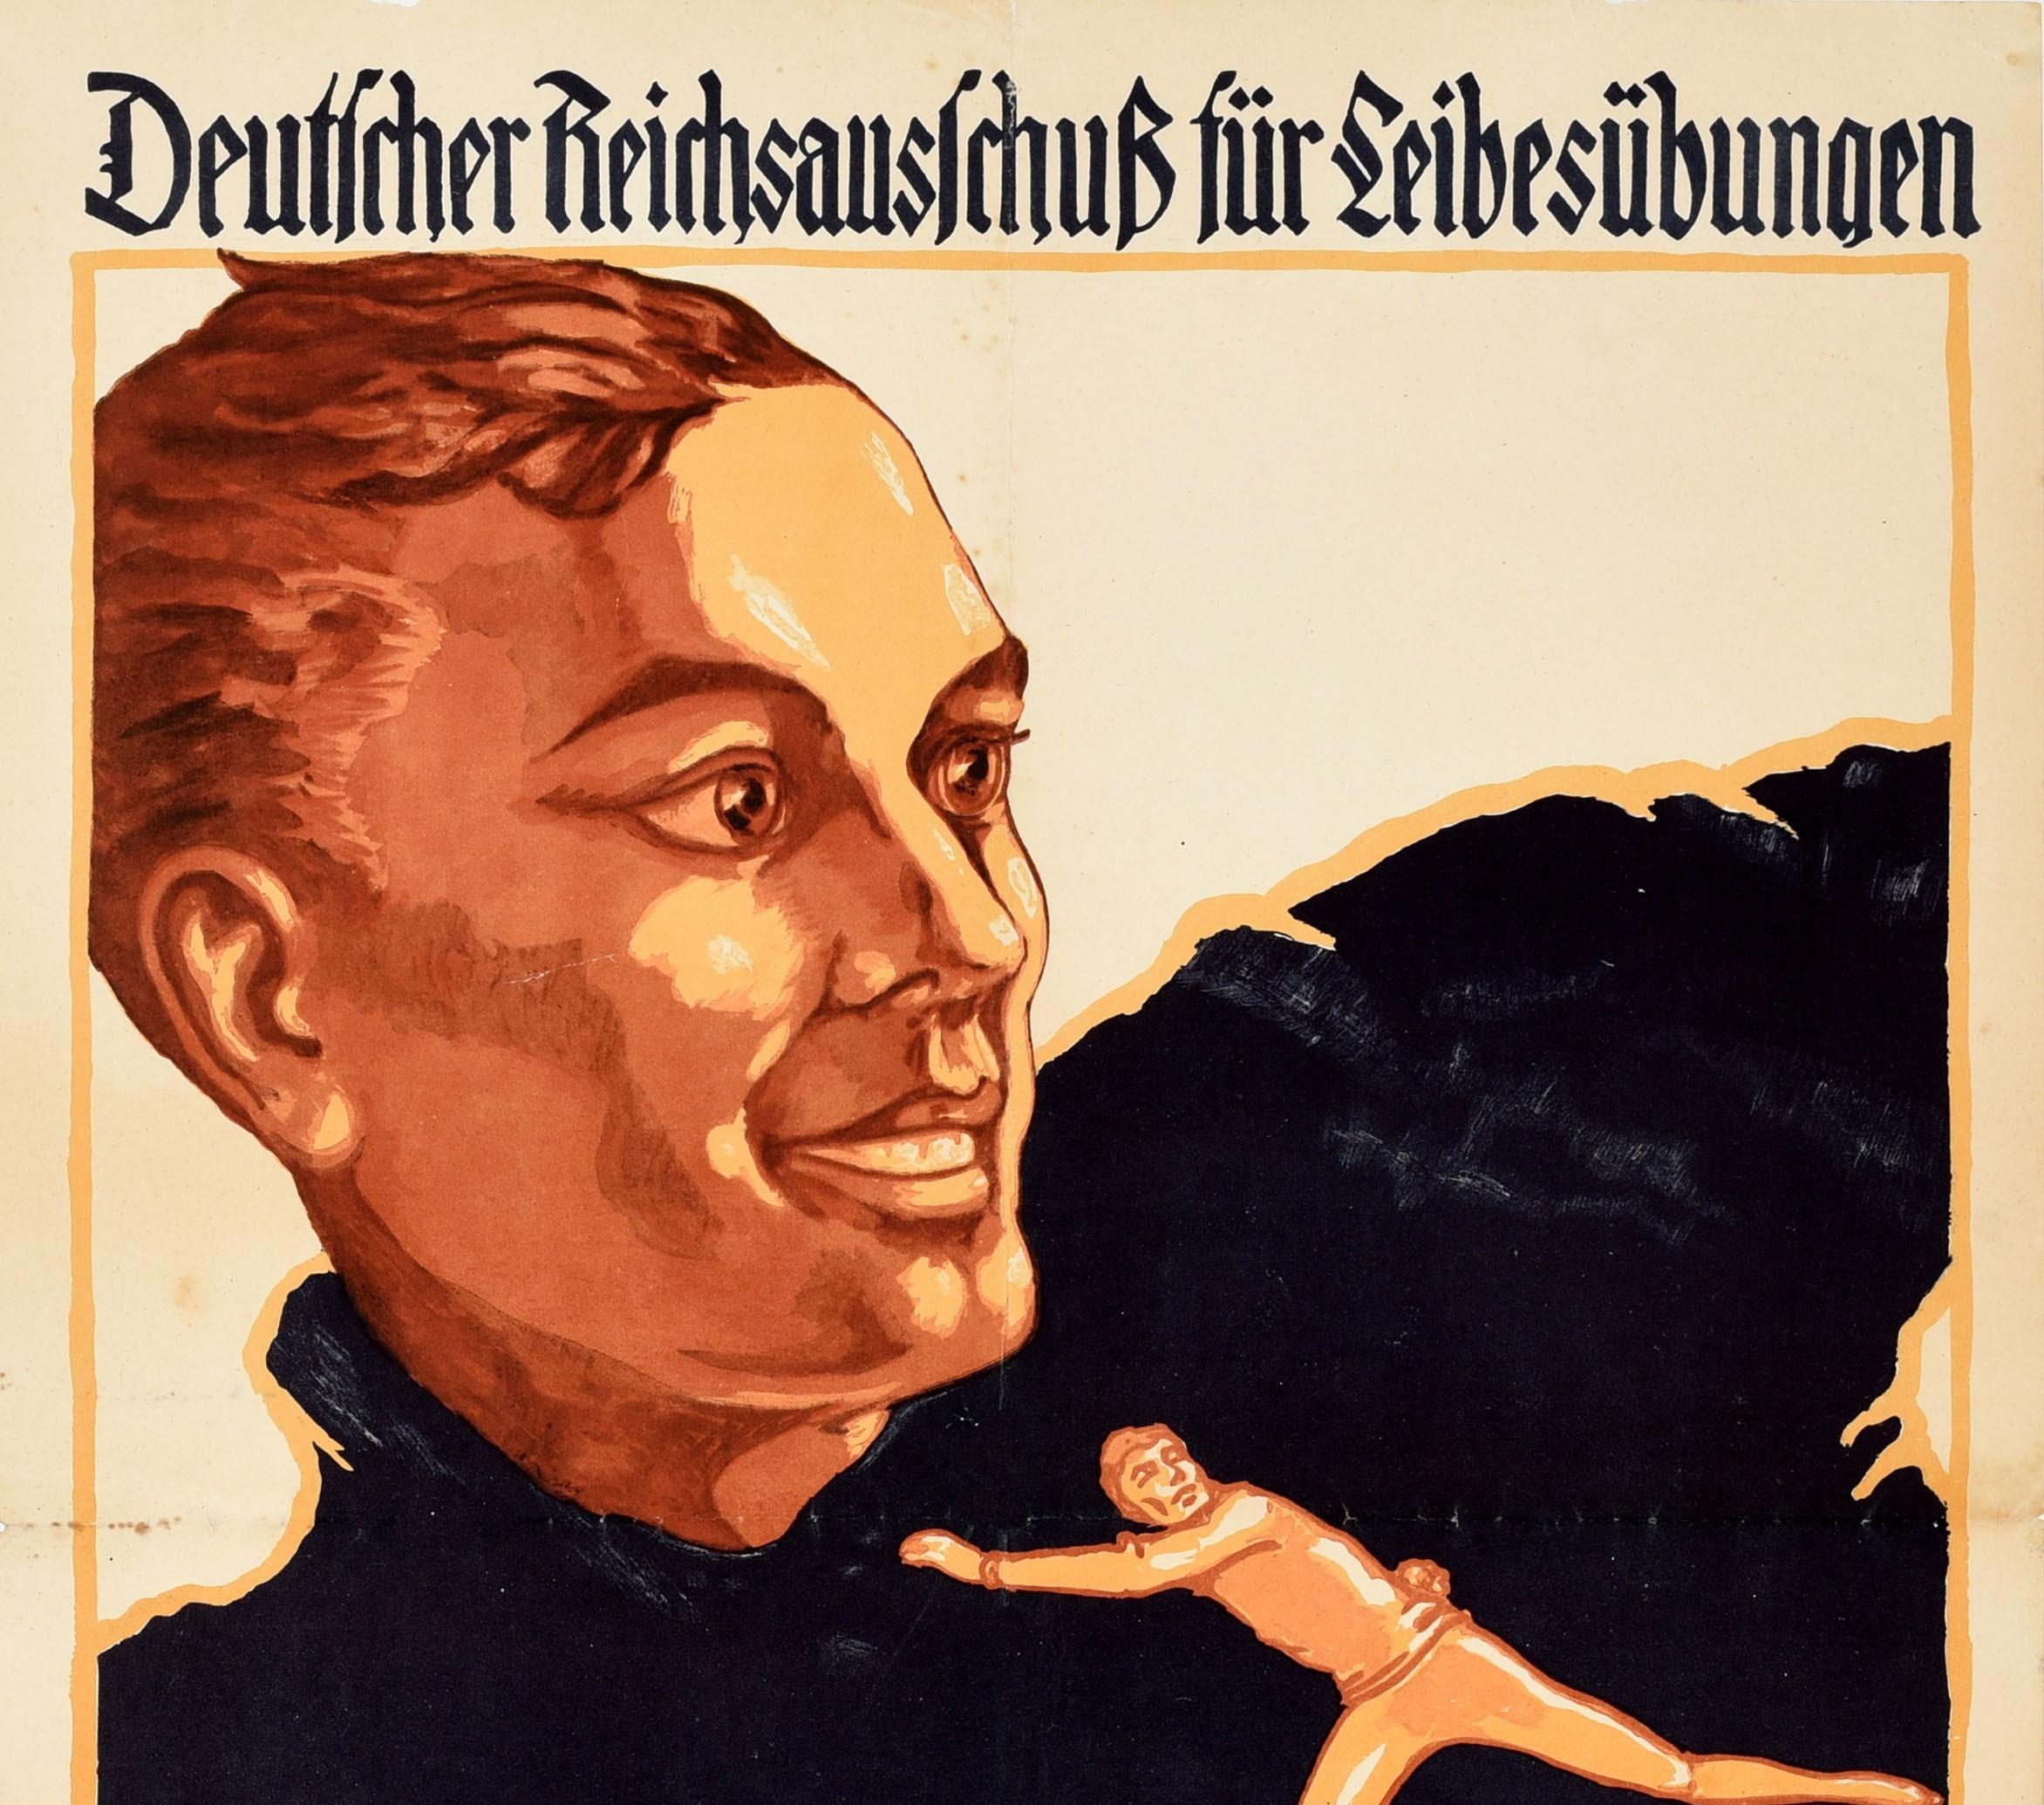 Affiche sportive vintage originale pour les Jeux de combats d'hiver de la Forêt-Noire de 1926 organisés par le Comité du Reich allemand pour l'éducation physique - Deutsche Reichsausschuss fur Leibesubungen 1926 Winterkampfspiele Schwarzwald.